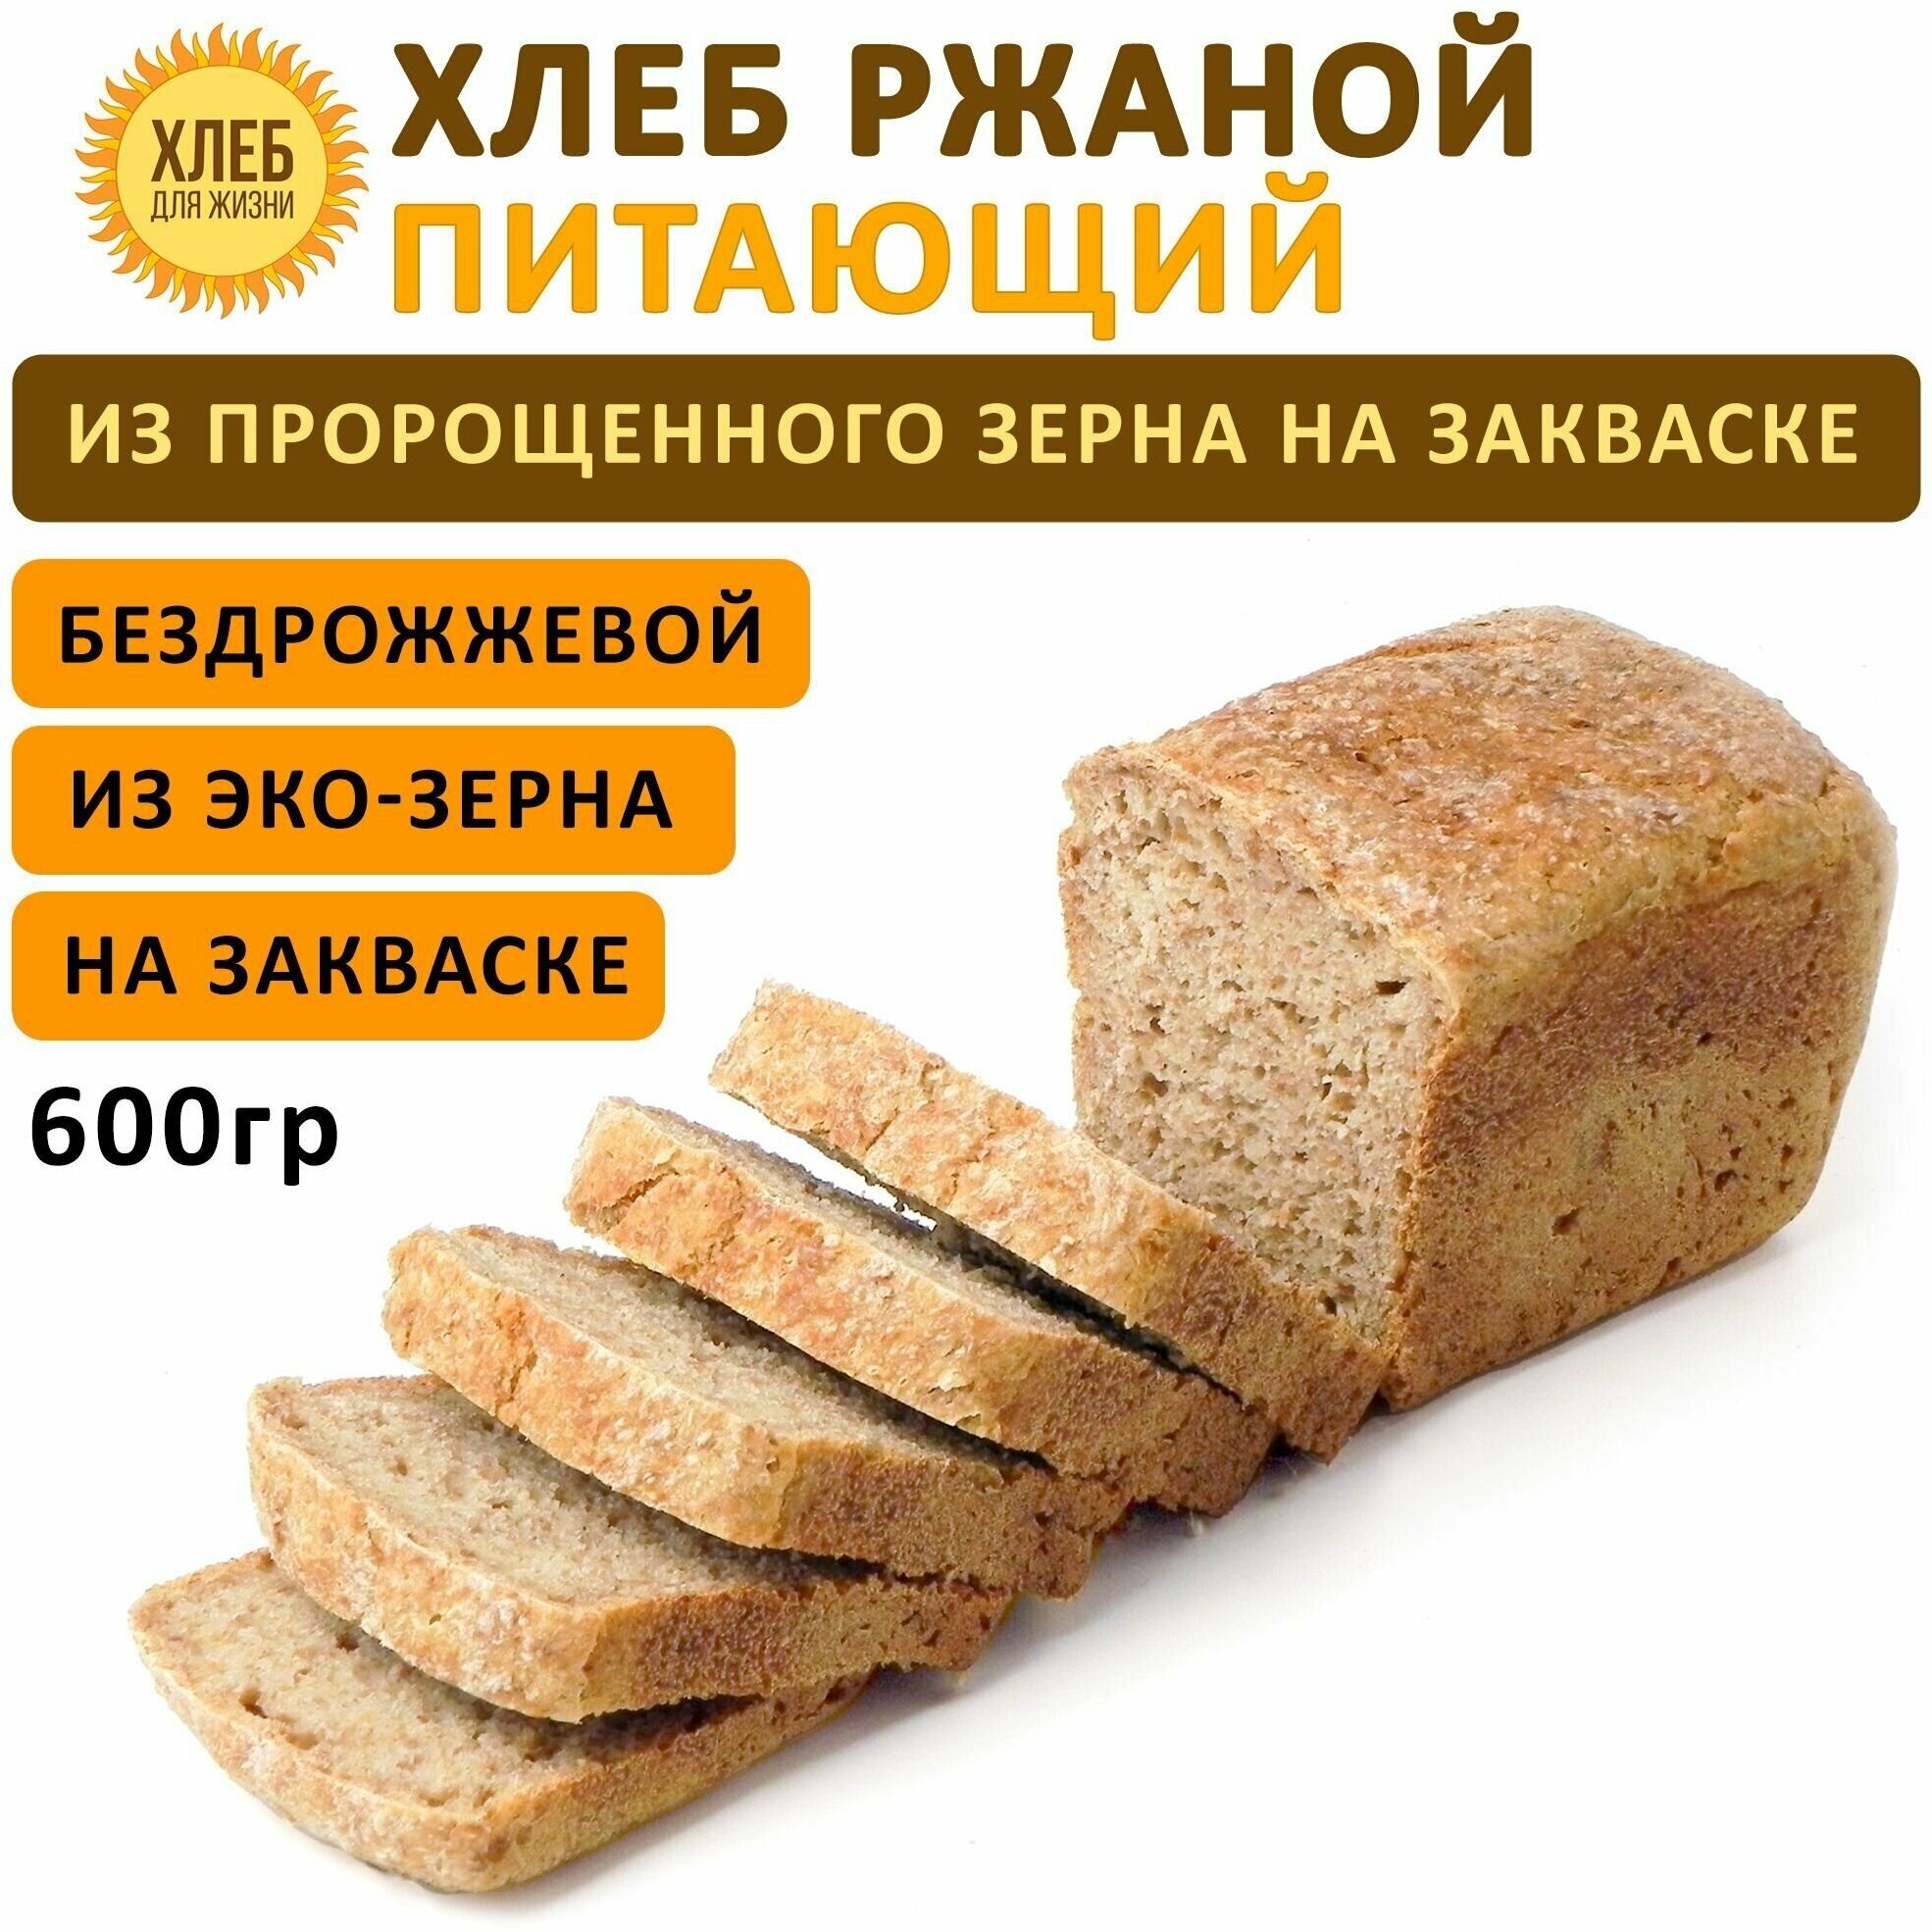 (600гр) Хлеб Ржаной питающий, цельнозерновой, бездрожжевой, на ржаной закваске - Хлеб для Жизни